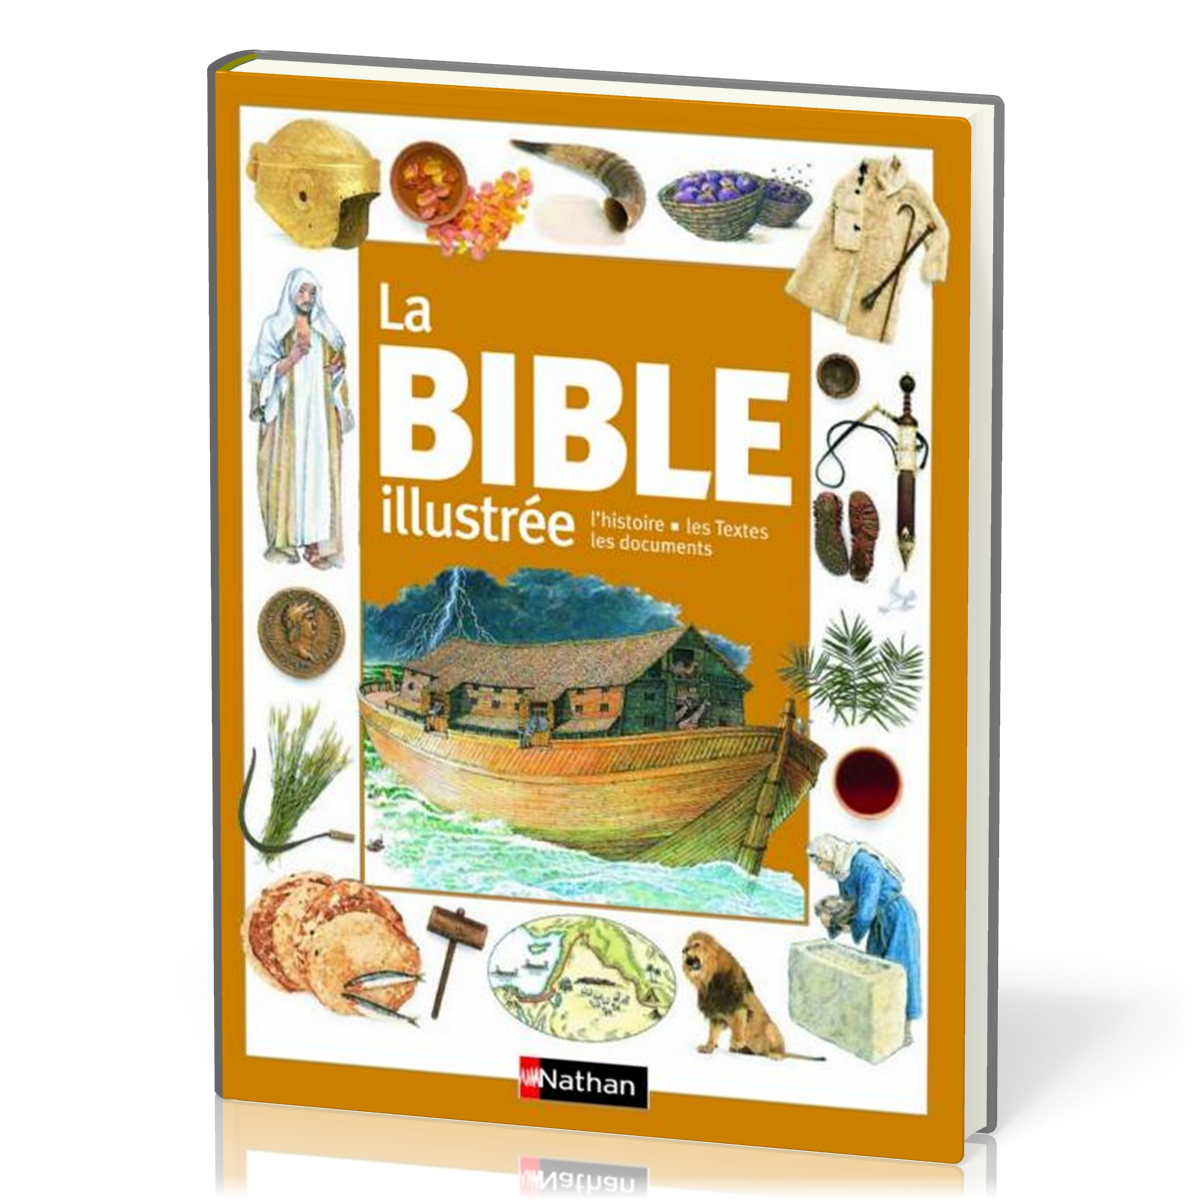 Bible illustrée (La) - L'histoire, les textes, les documents